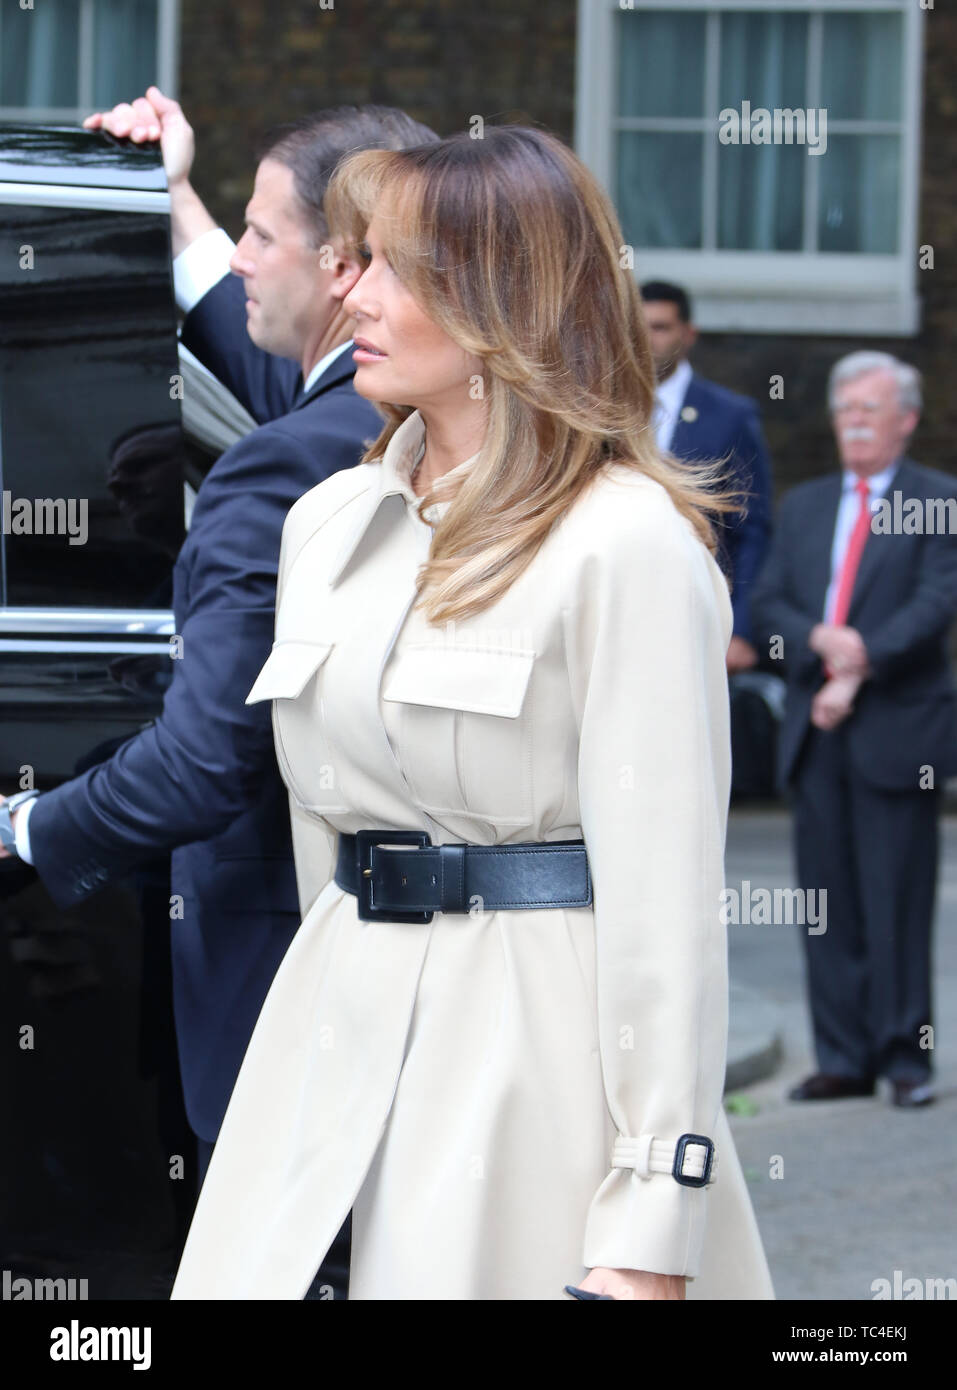 Melania Trump, Stati Uniti d'America visita presidenziale per il Regno Unito, Downing Street, Londra, Regno Unito, 04 giugno 2019, Foto di Richard Goldschmi Foto Stock